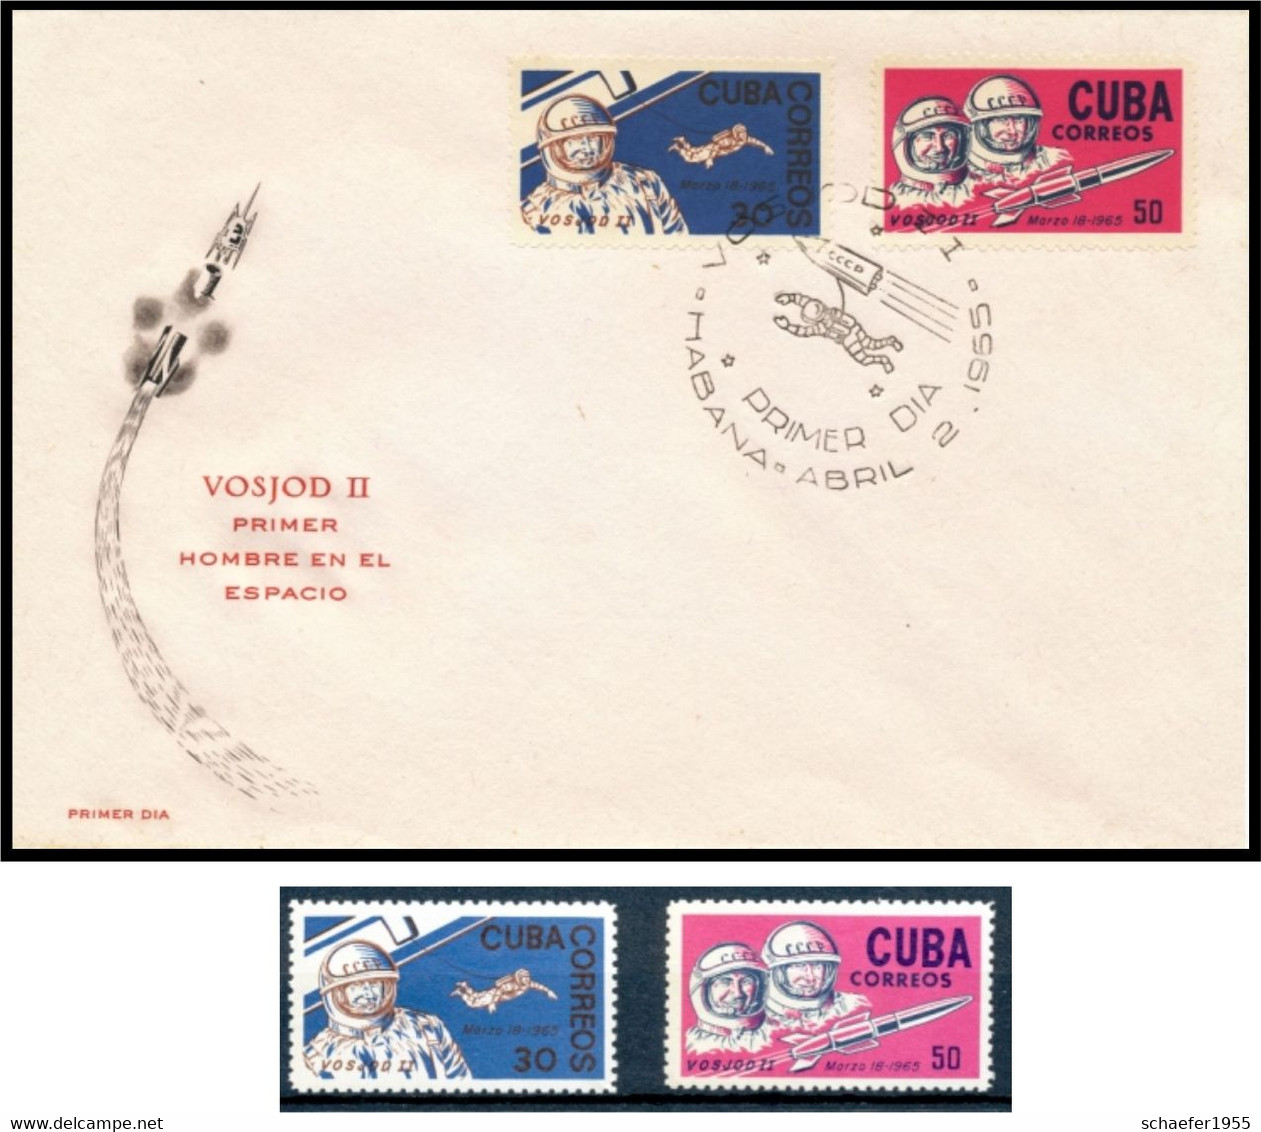 Cuba, Kuba 1965 FDC + Stamps VOSJOD II - Noord-Amerika